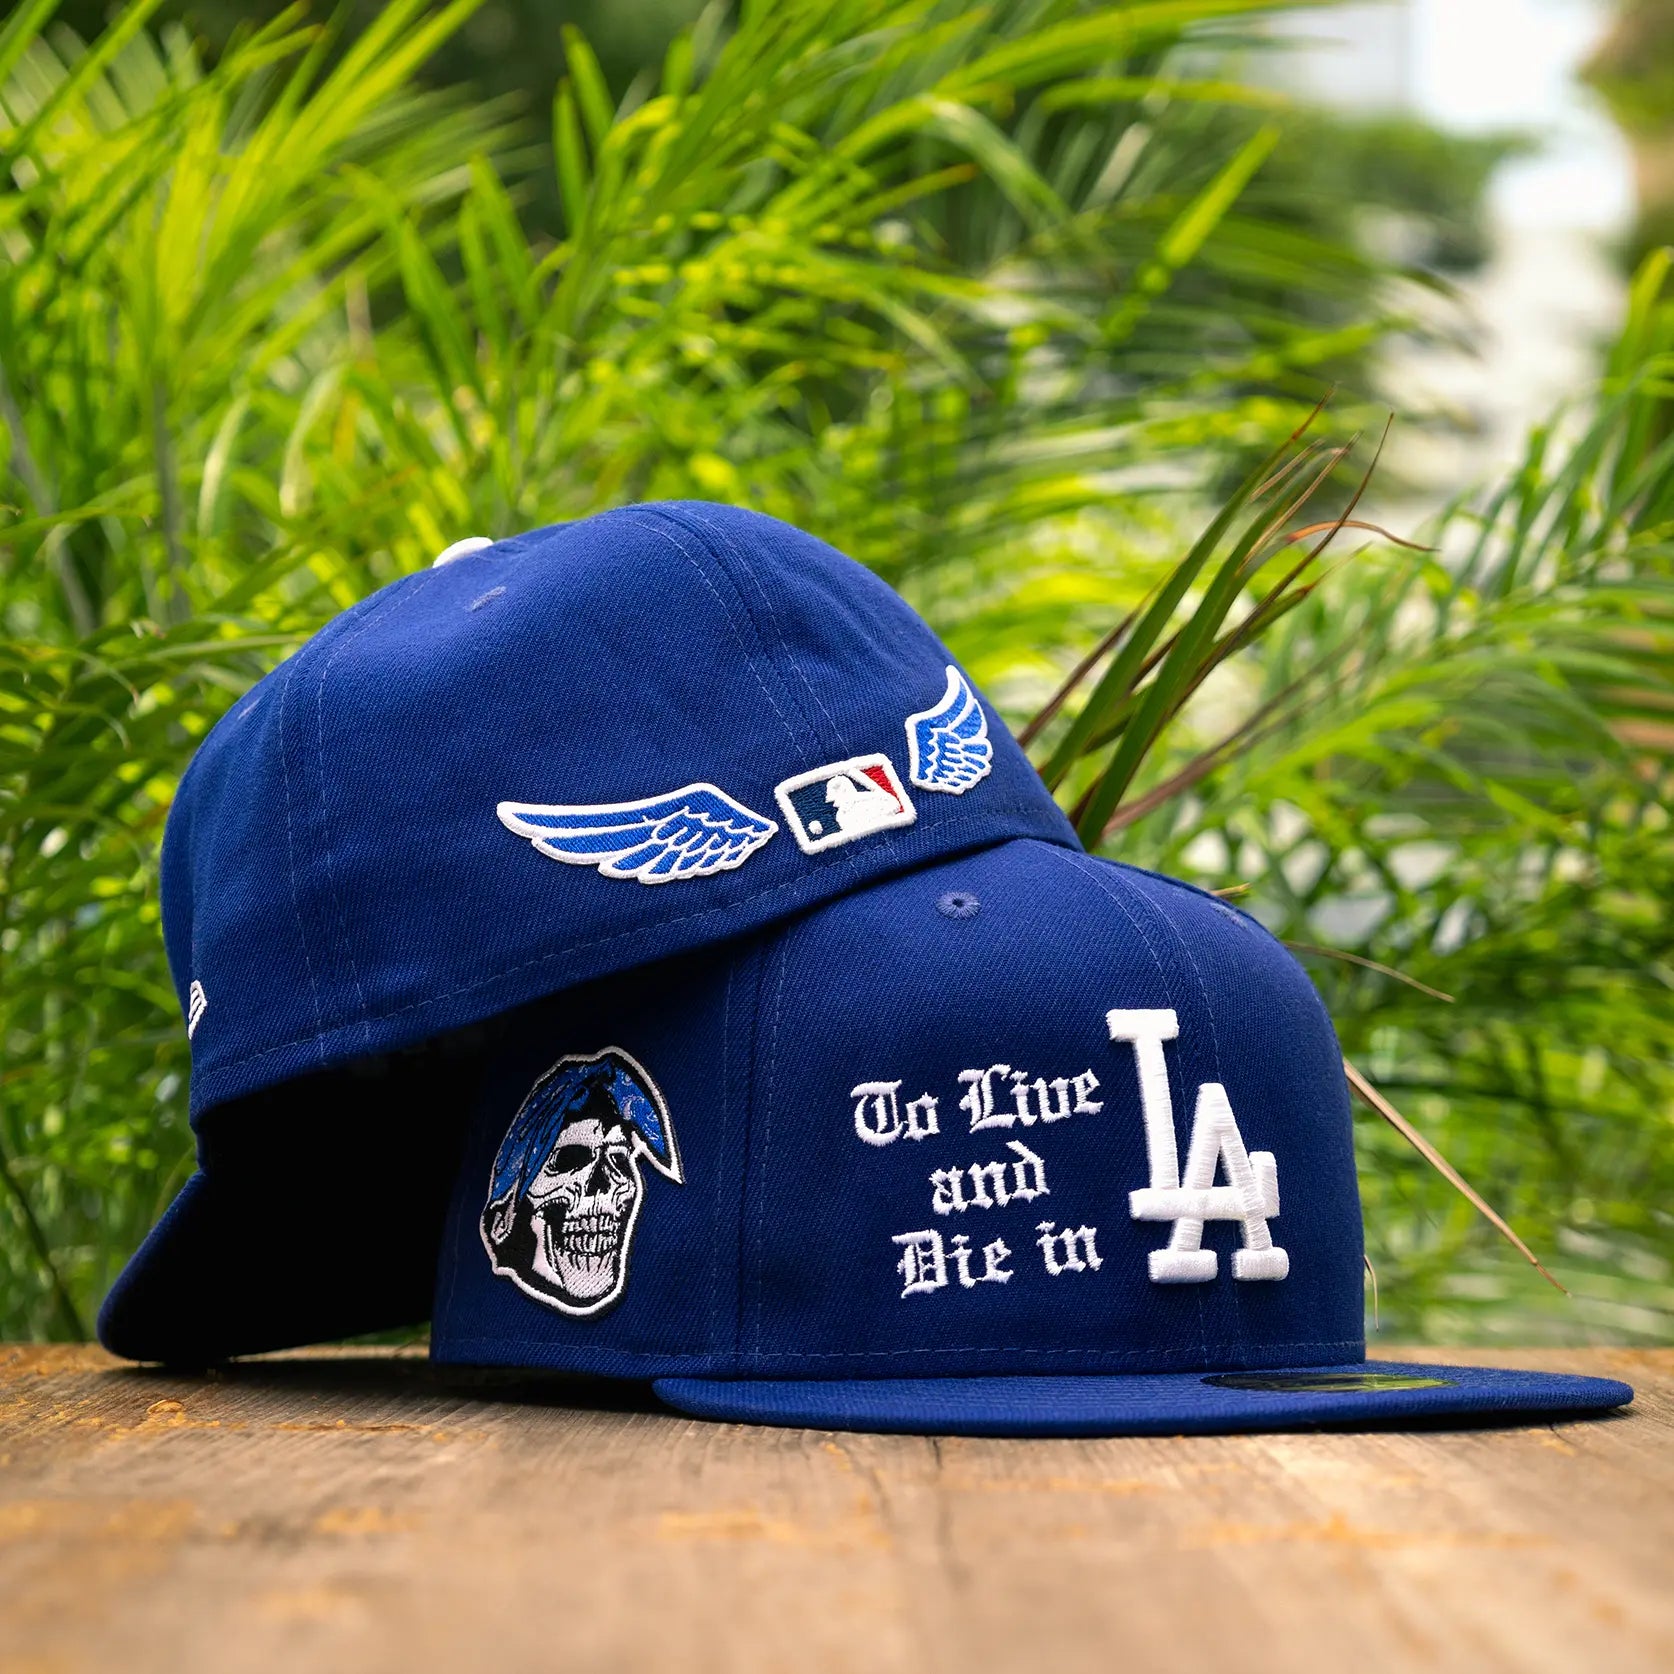 blue la hat